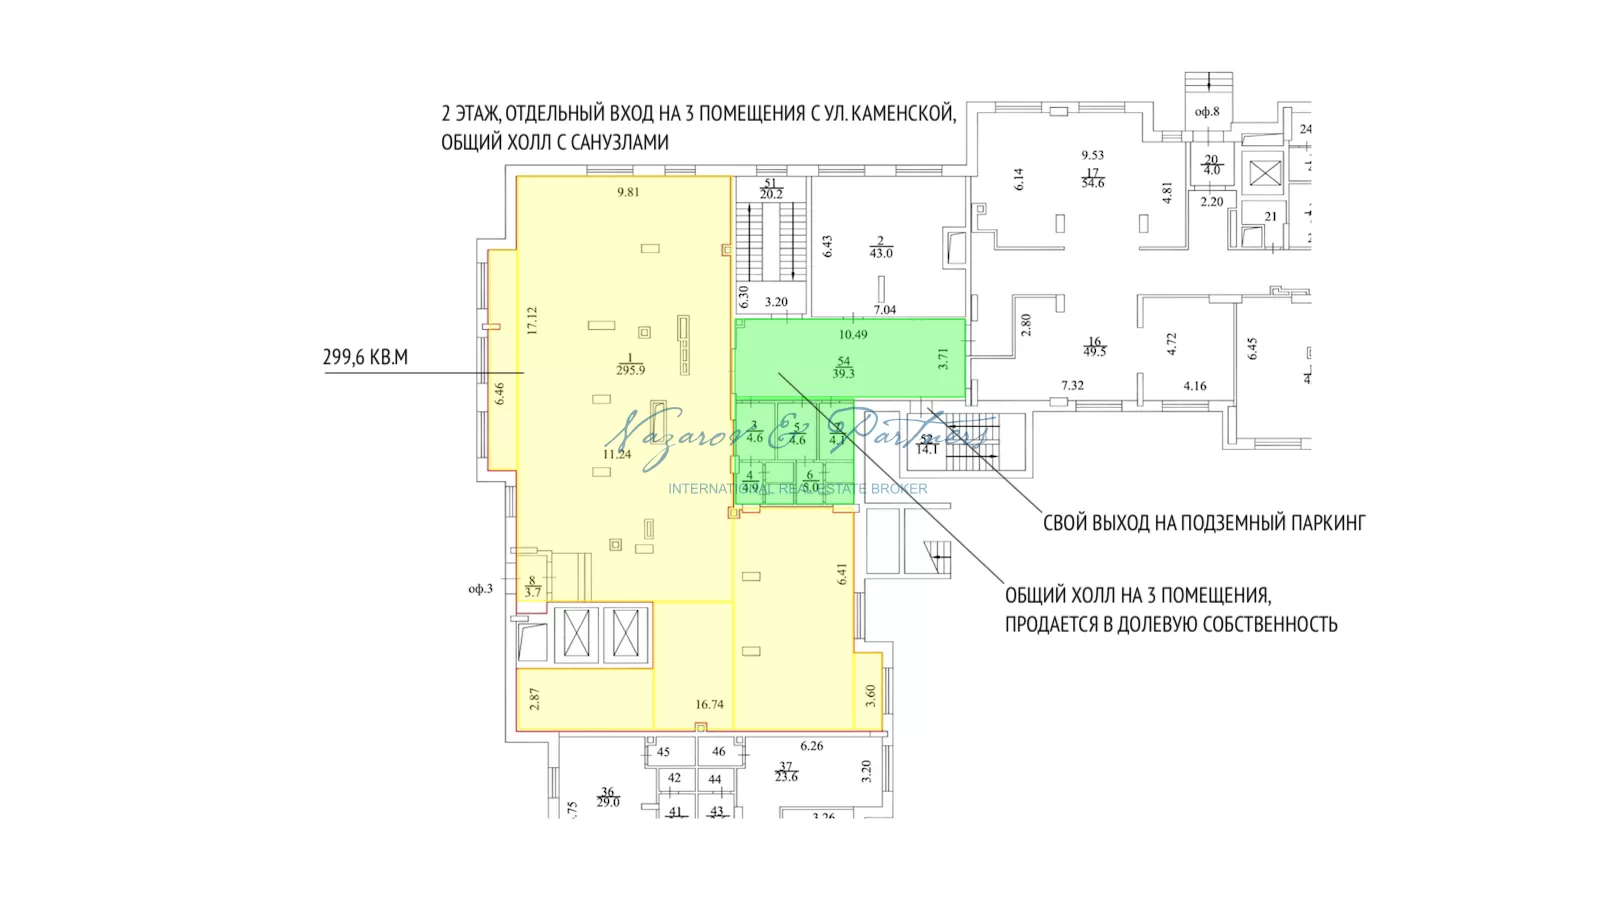 Продажа помещения 300 кв.м под офис, коворкинг,  студию йоги или массажный салон в 600 метрах от метро Сибирская